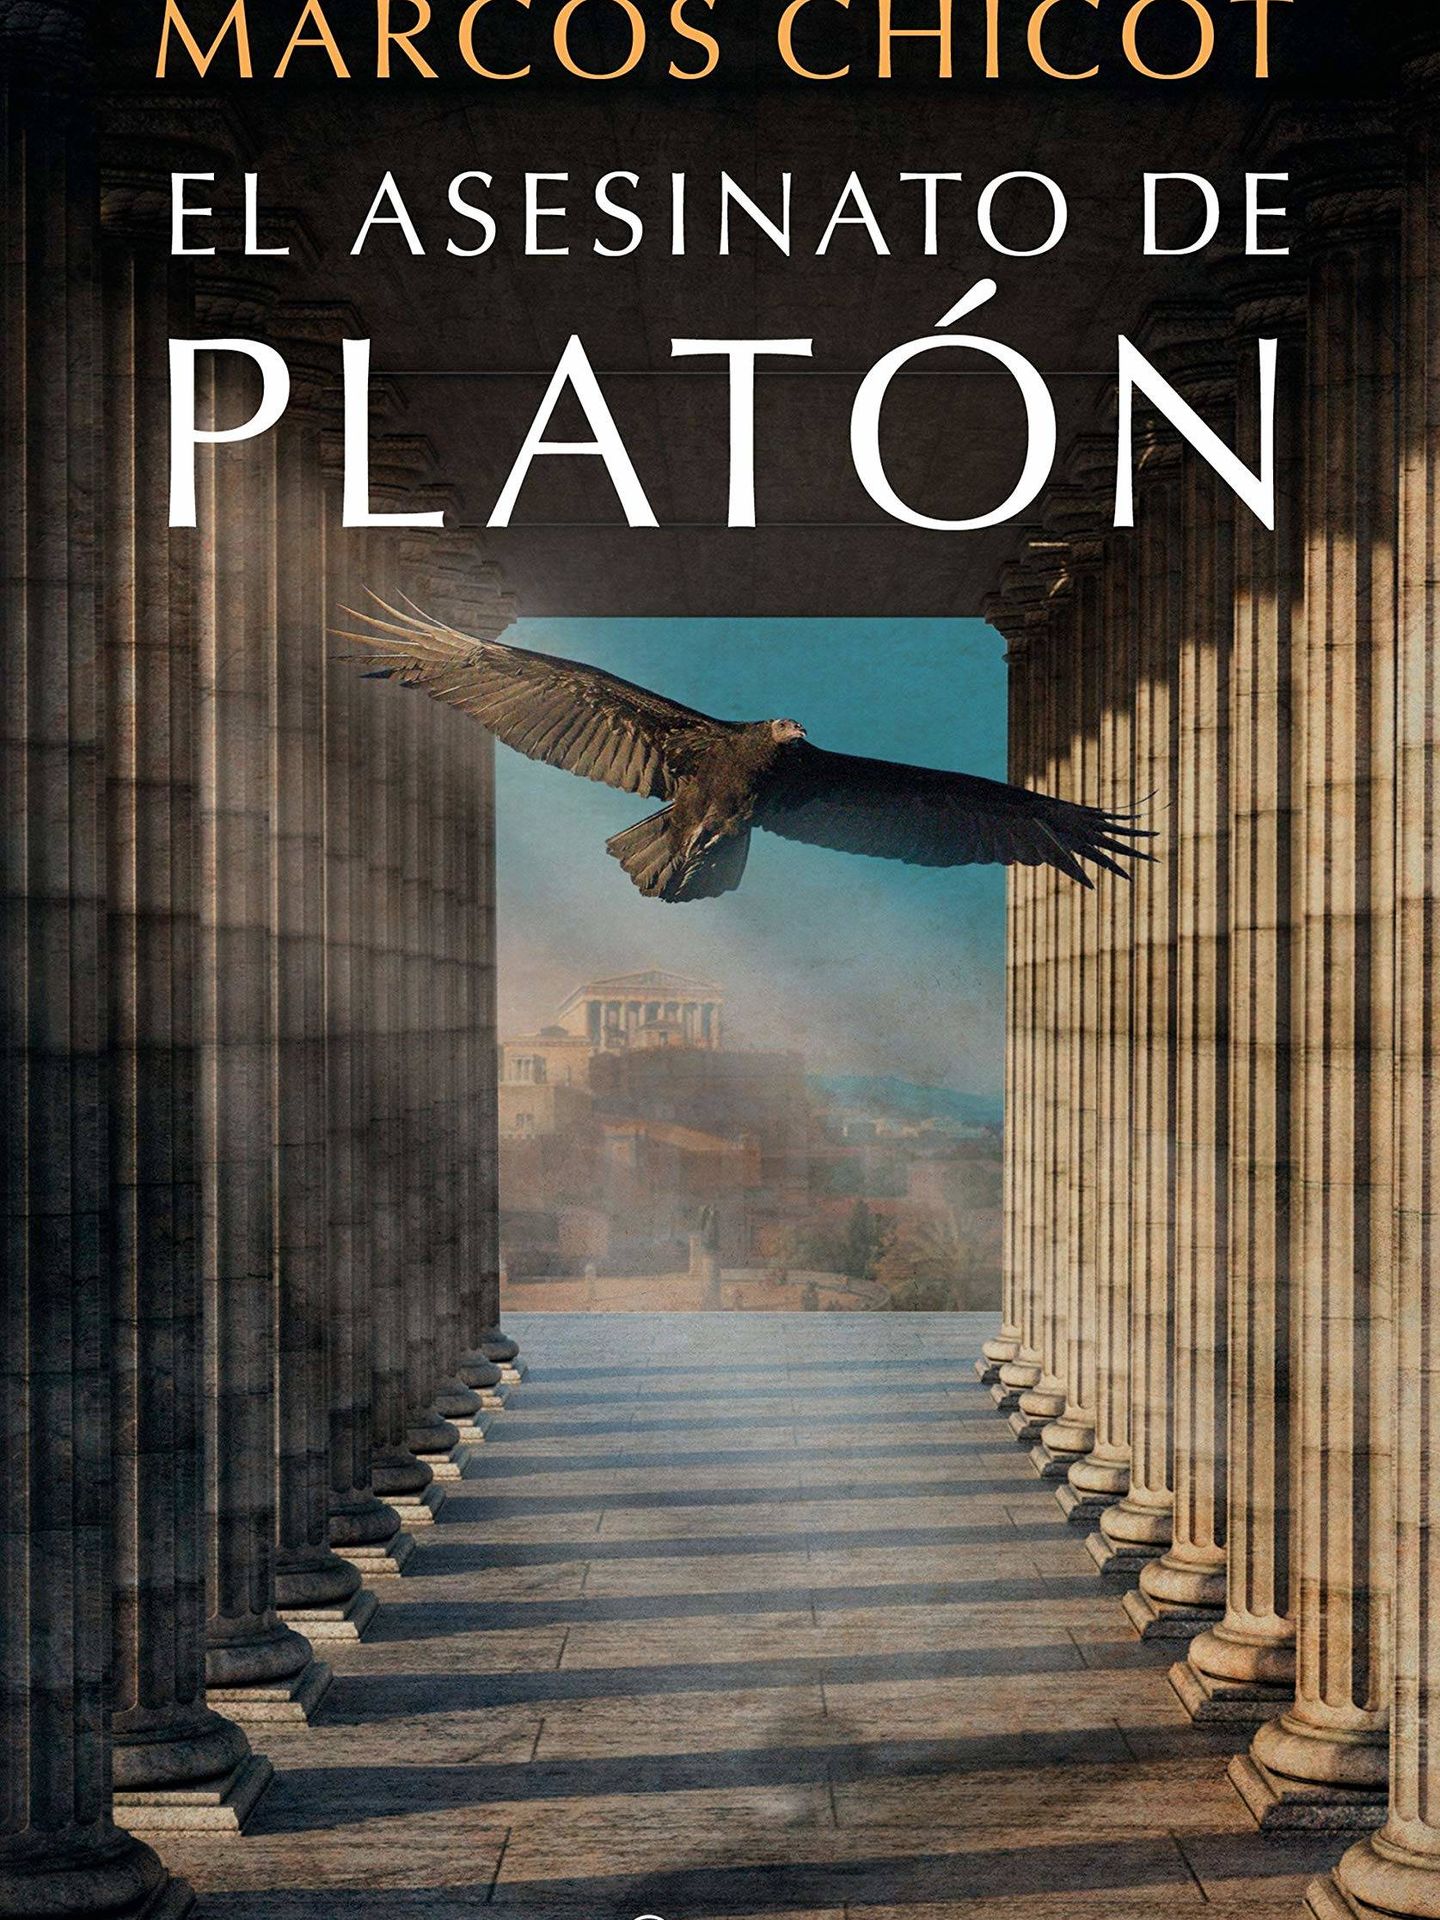 'El asesinato de Platón' (Planeta)